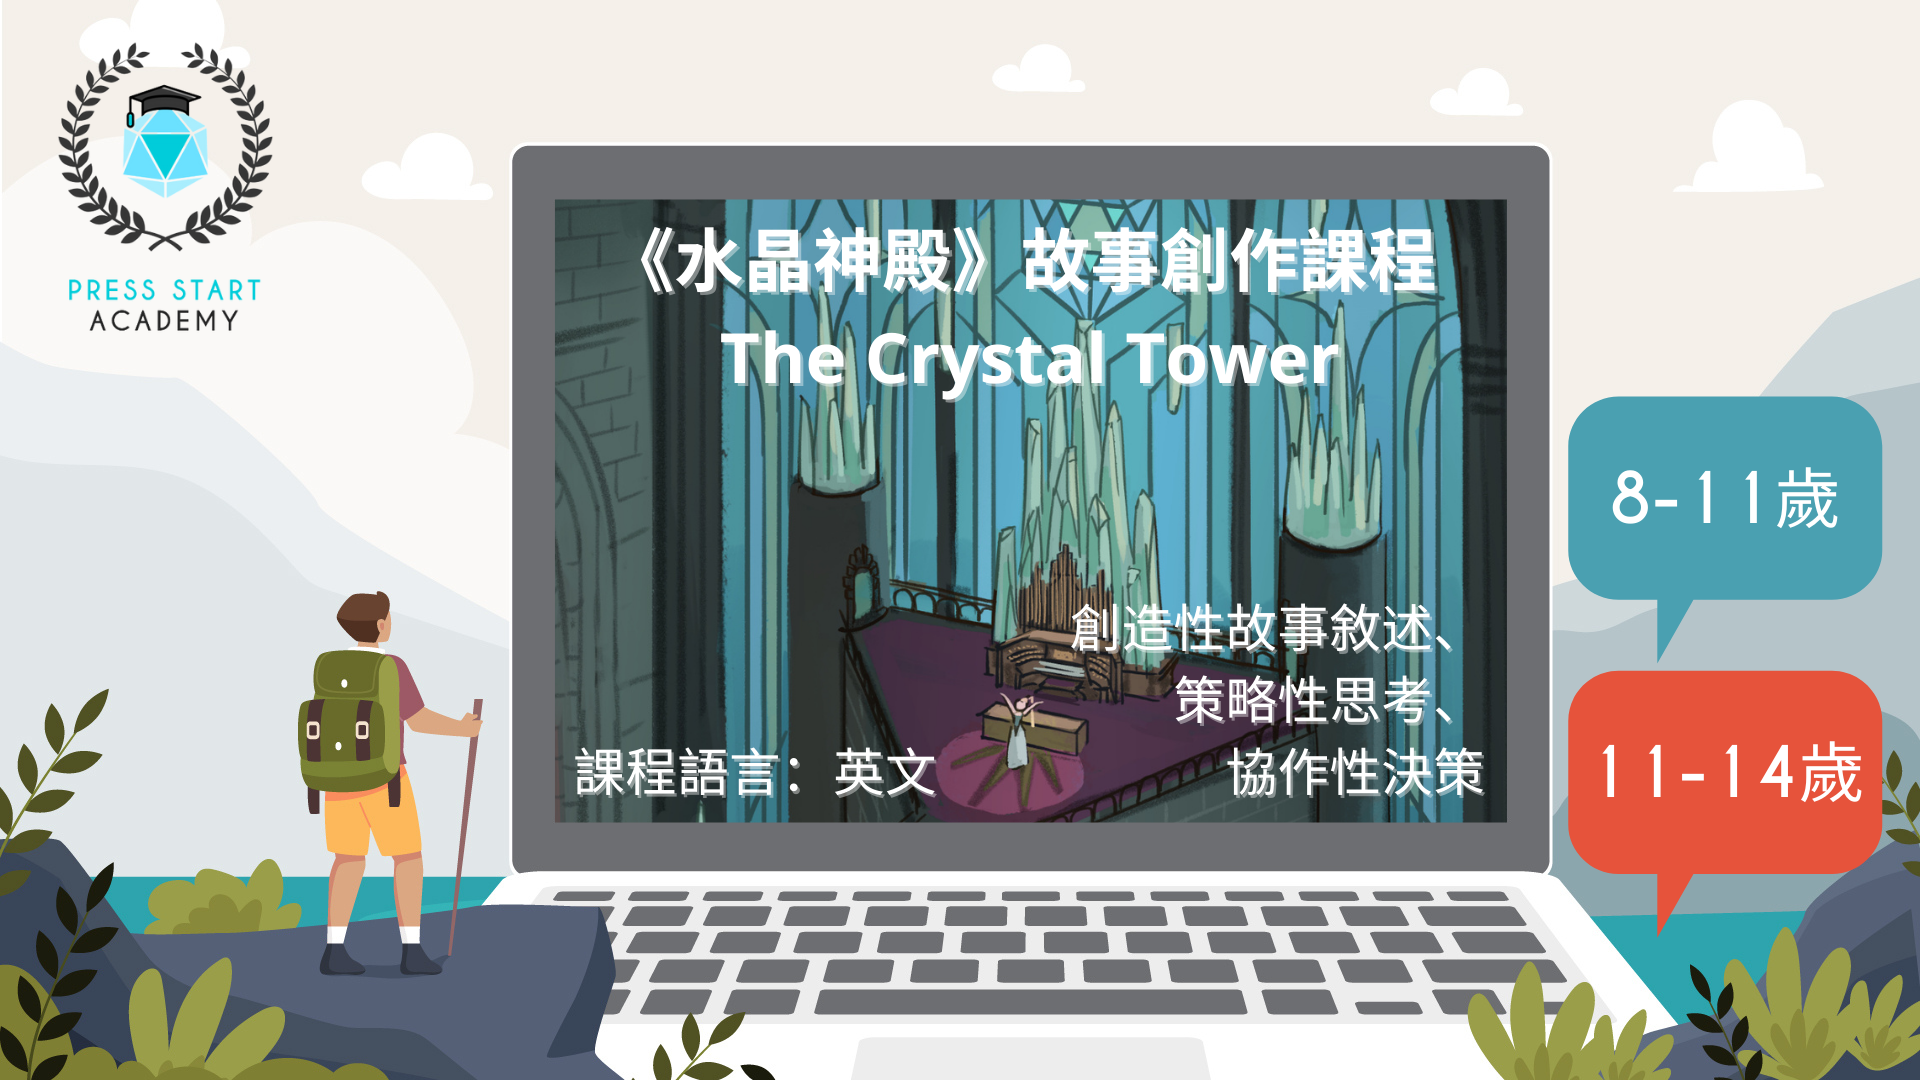 《水晶神殿》線上故事創作課程 (8-14歲)